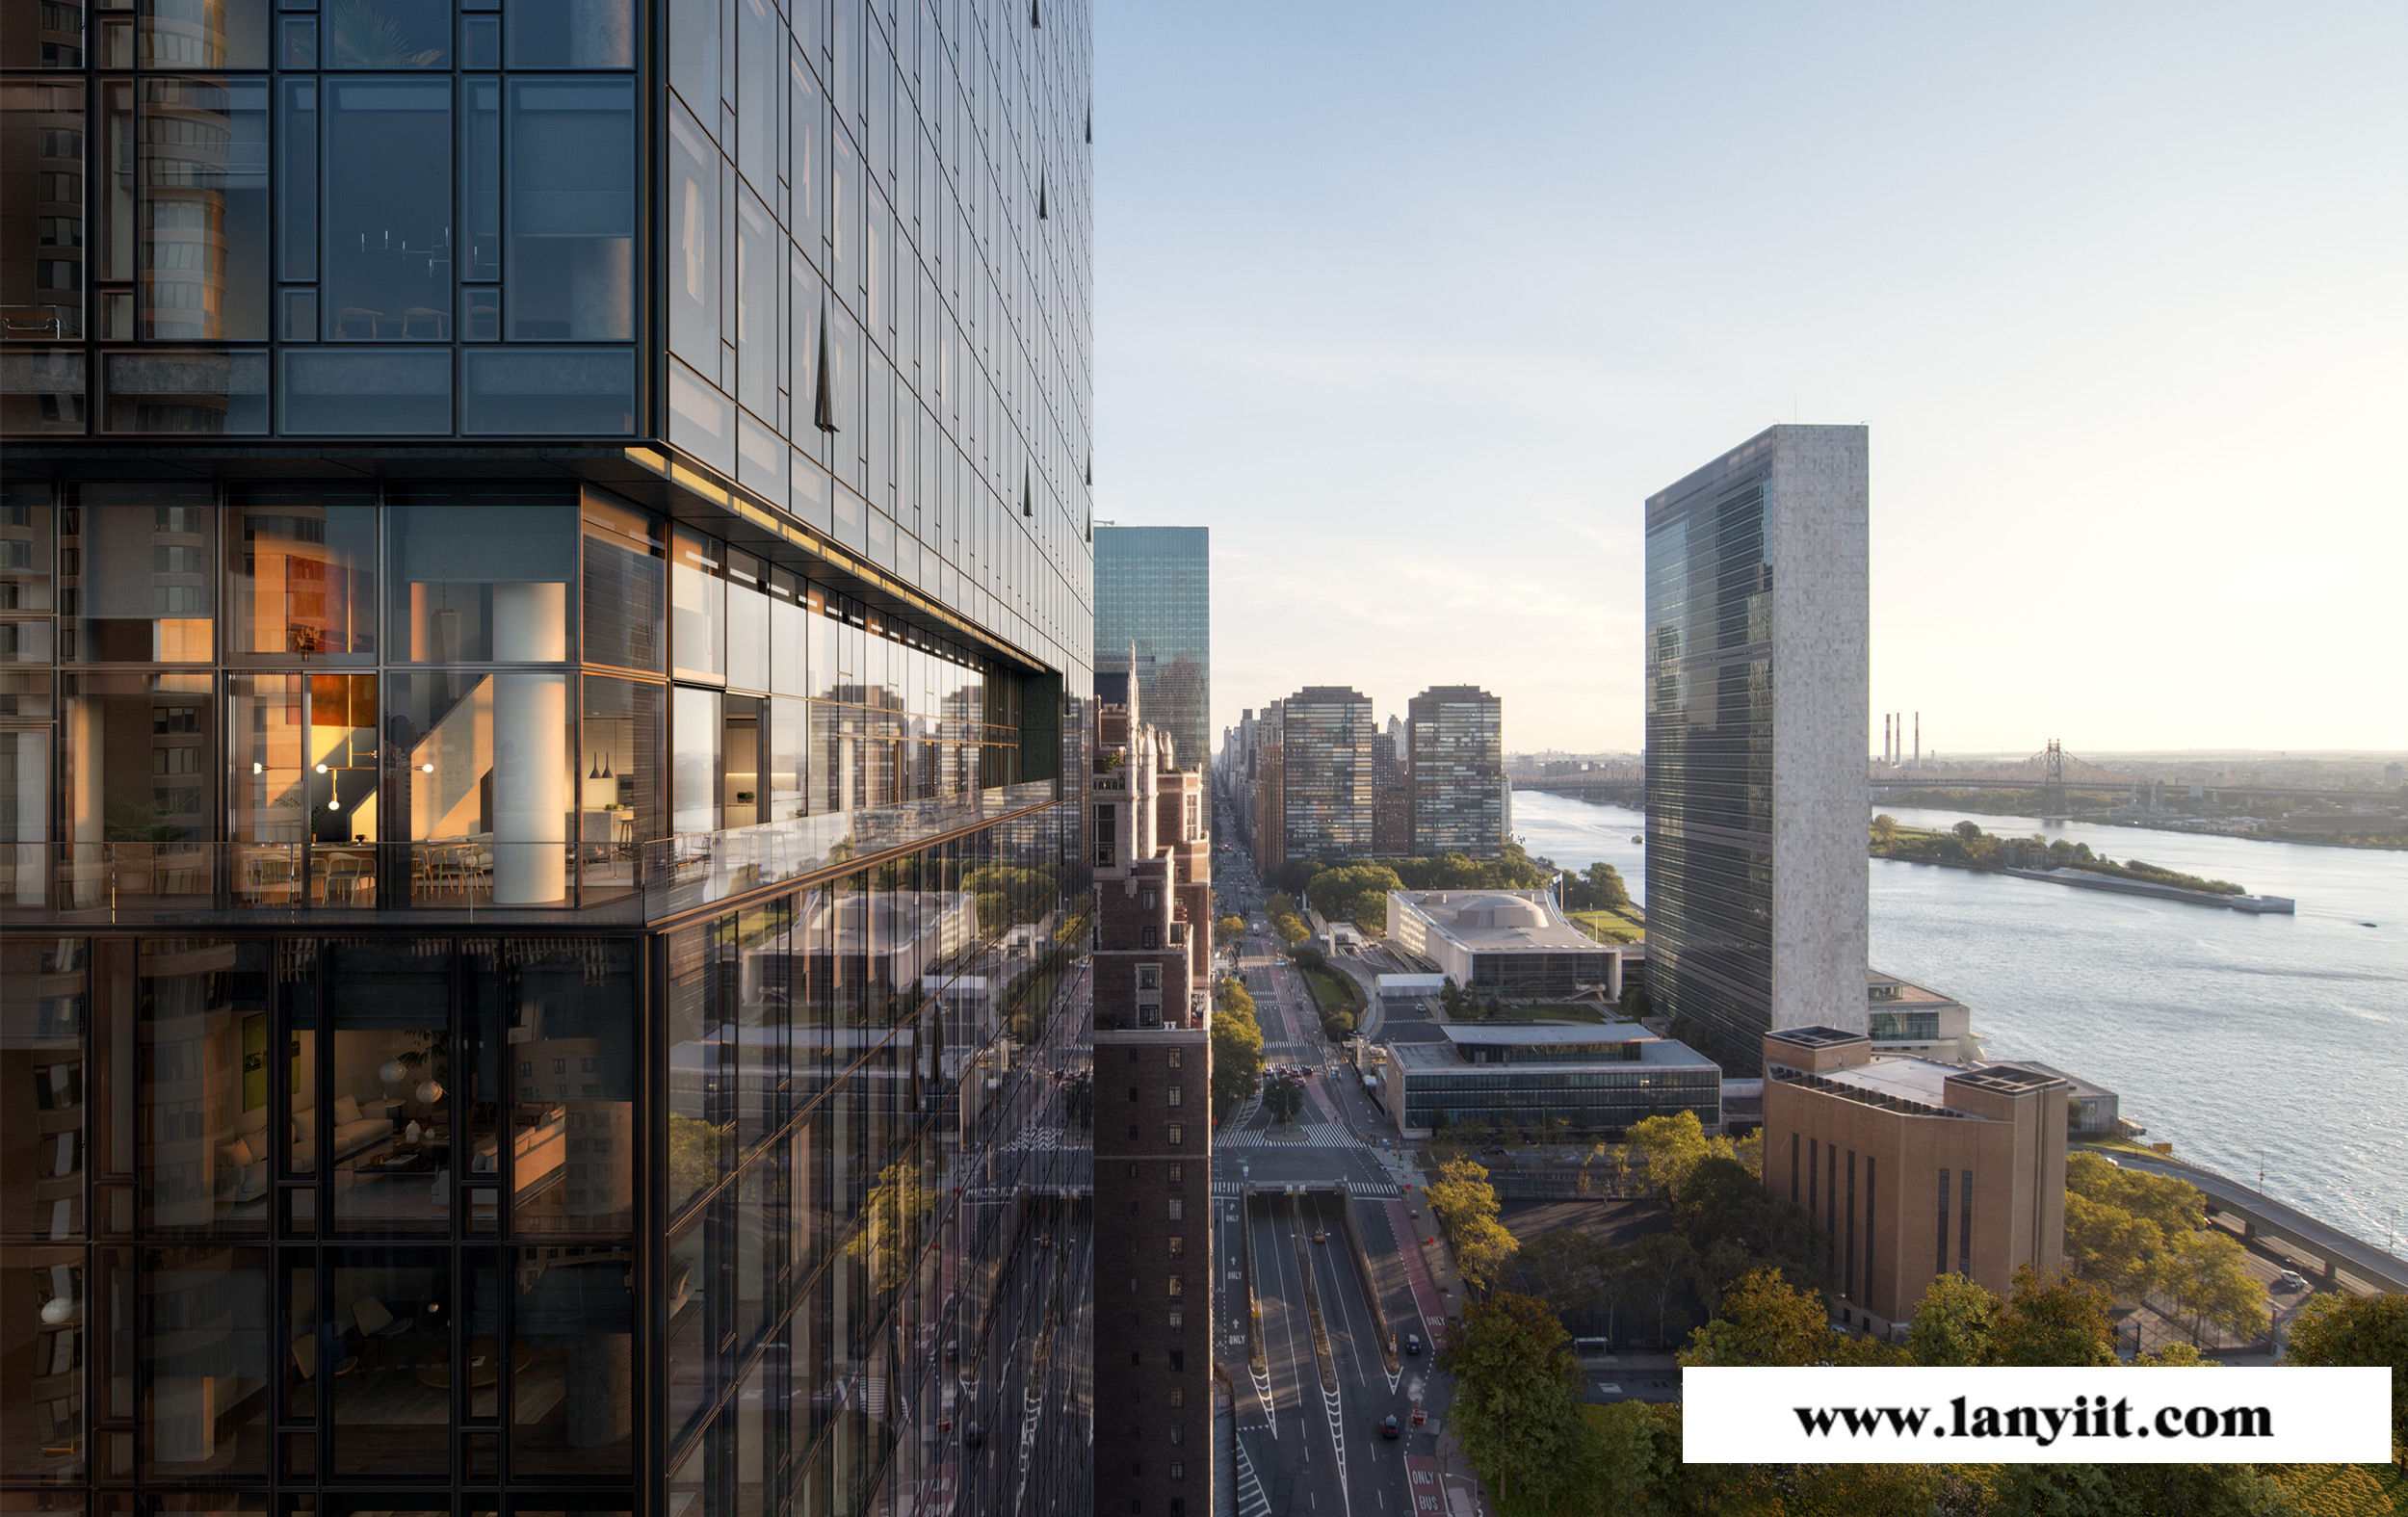 曼哈顿东高端楼盘推荐:联合国一号 全玻璃幕墙 坐享无敌河景和曼哈顿城市全景景观(图9)